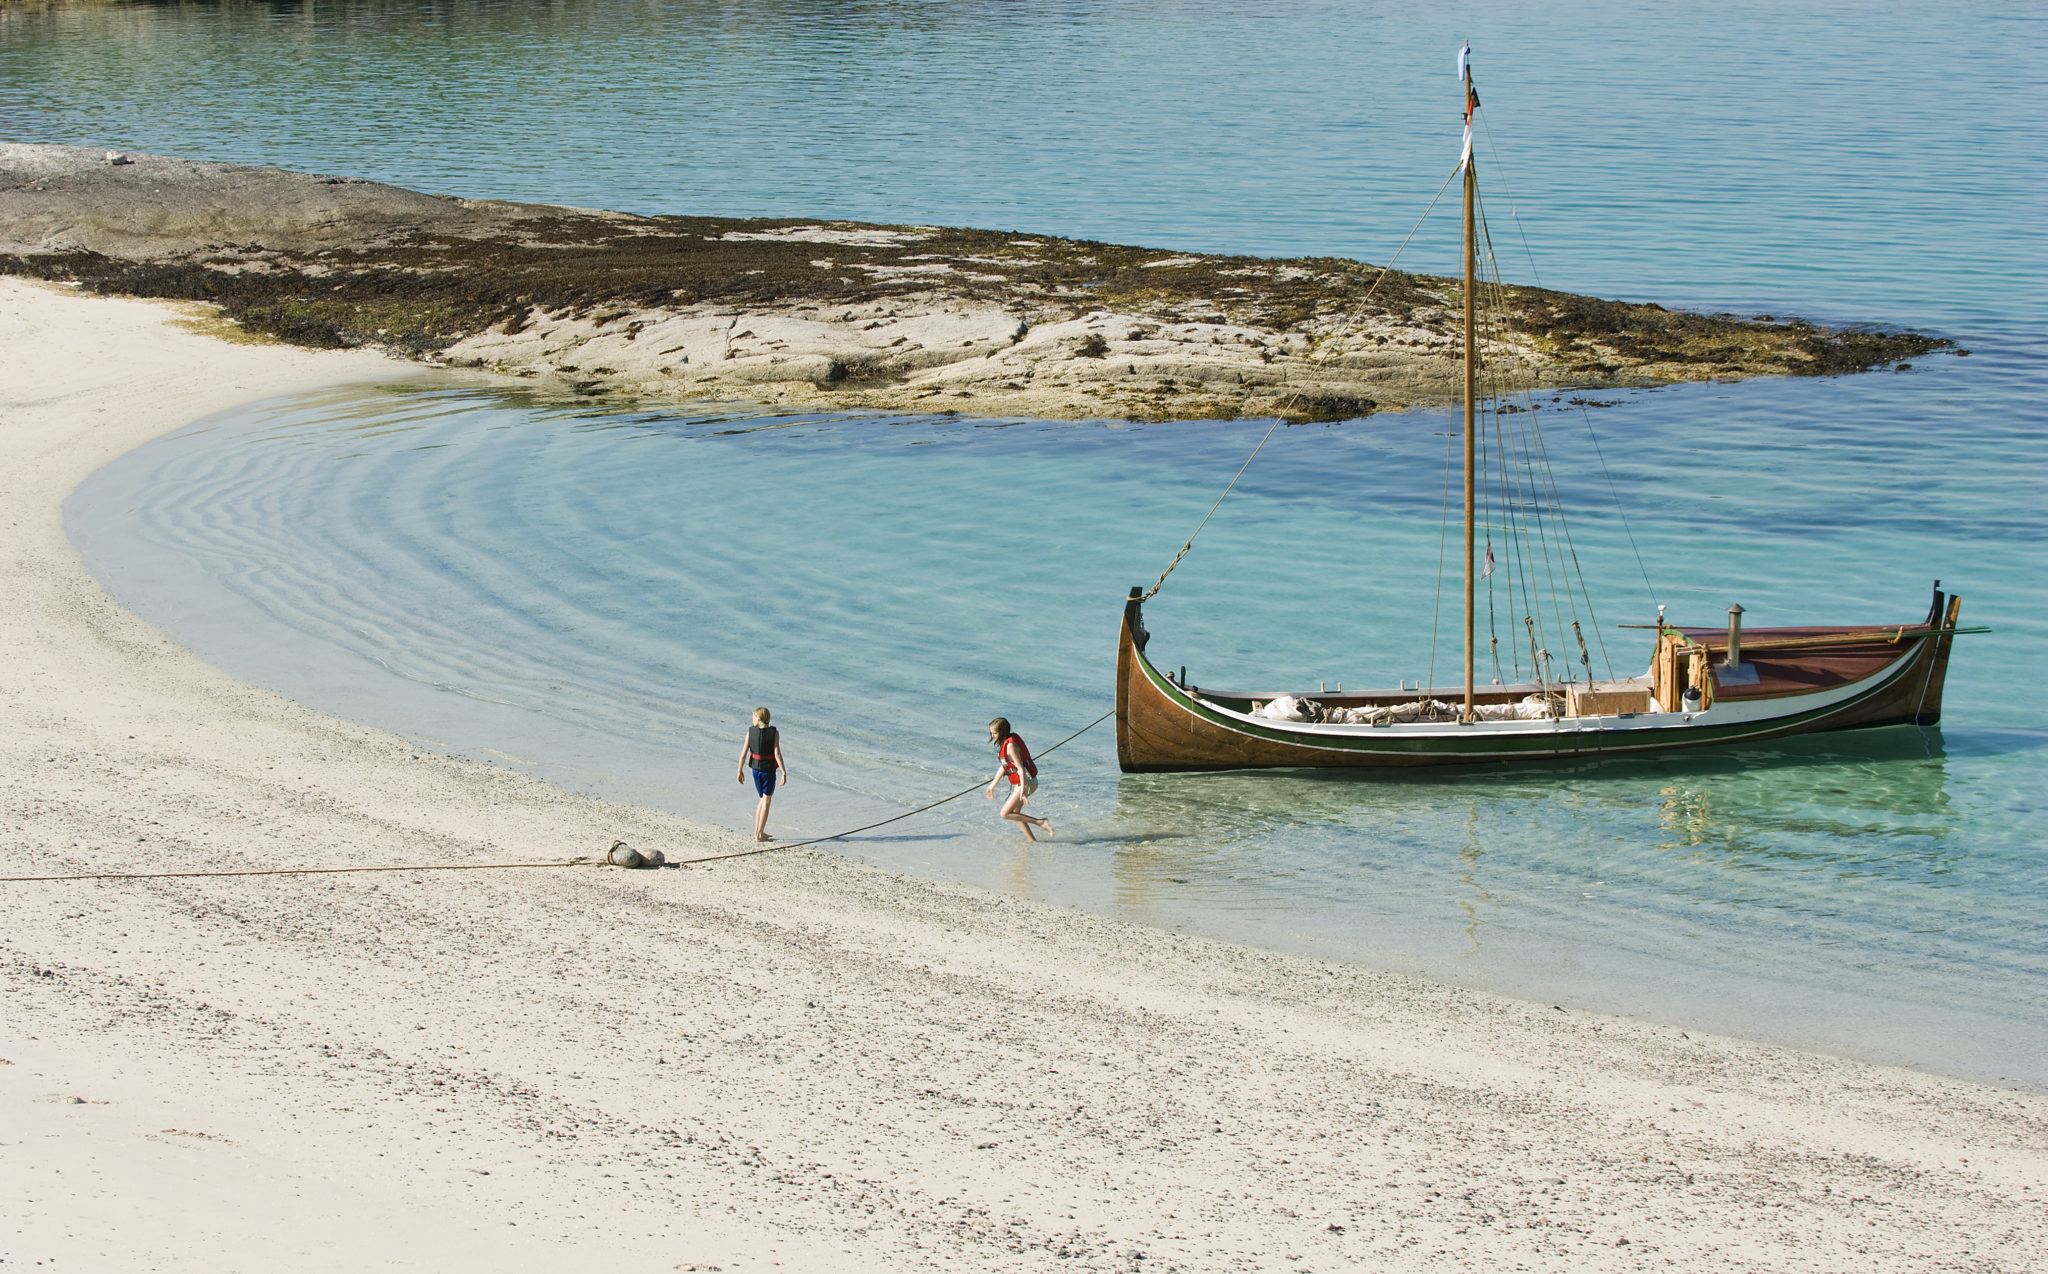 En nordlandsbåt dras i land © Hans Arne Paulsen